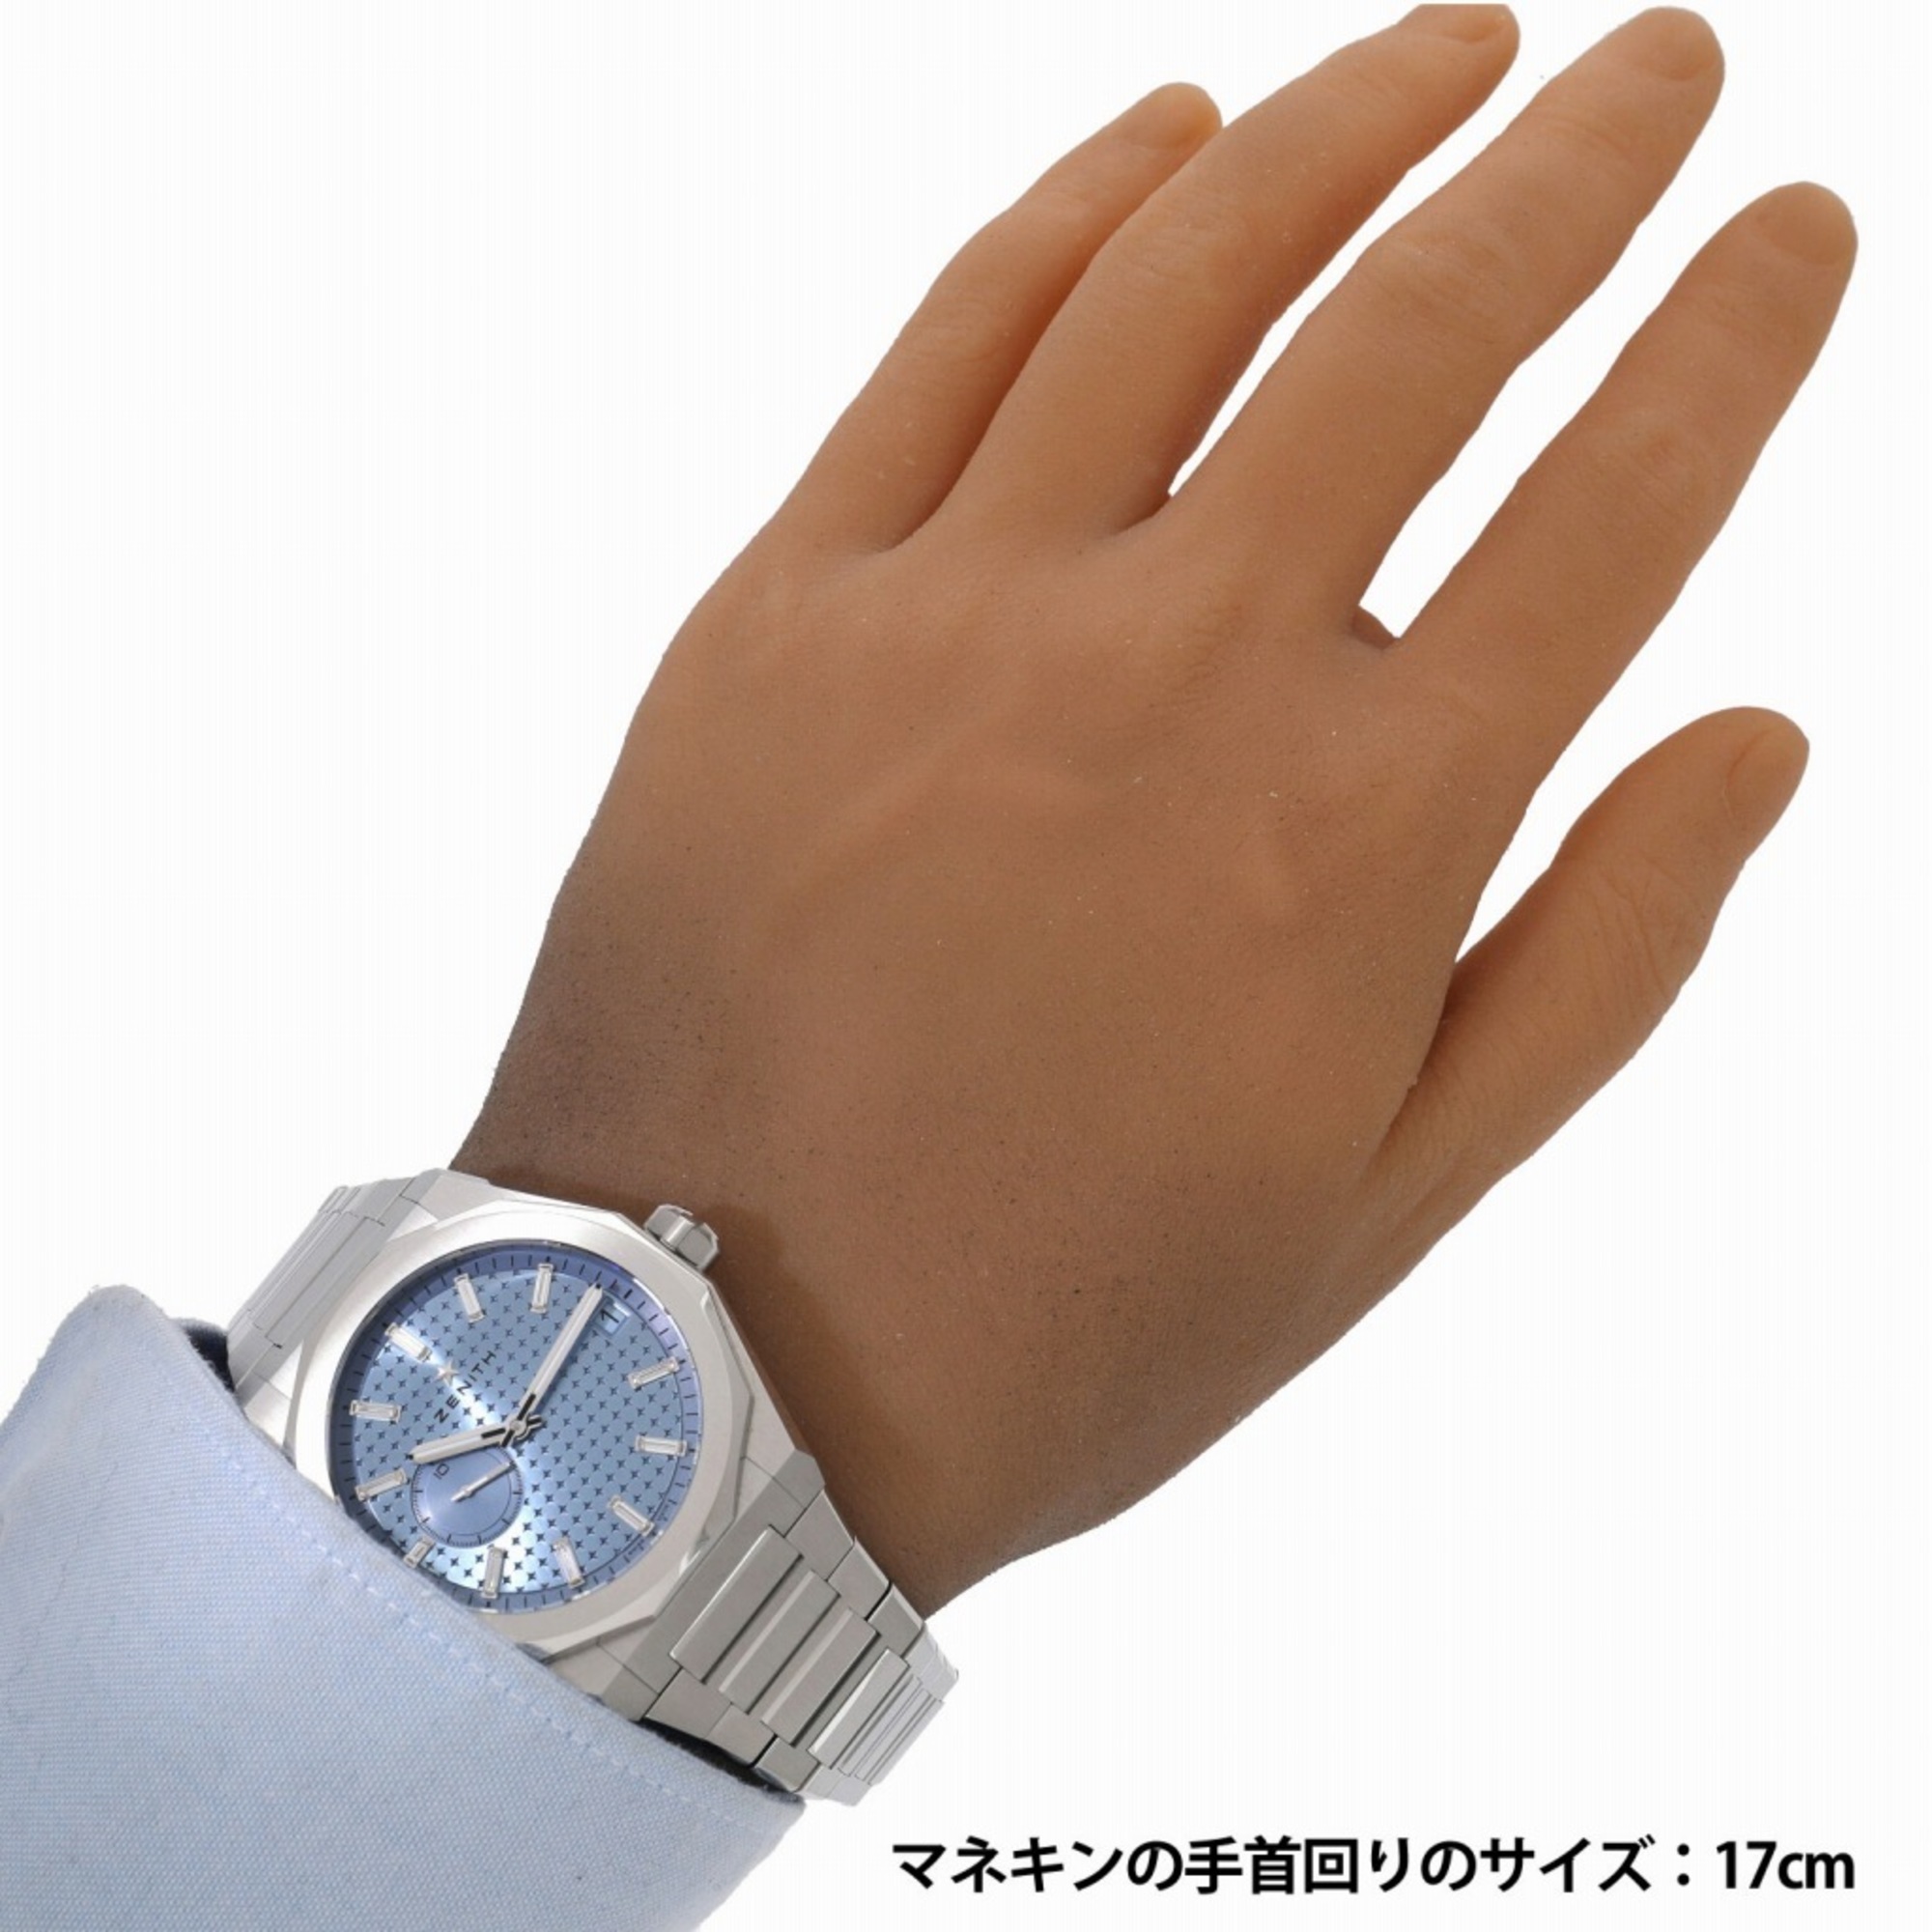 Zenith Defy Skyline Day Limited 100 03.9300.3620/16.I001 Ice Blue x 11P Diamond Men's Watch